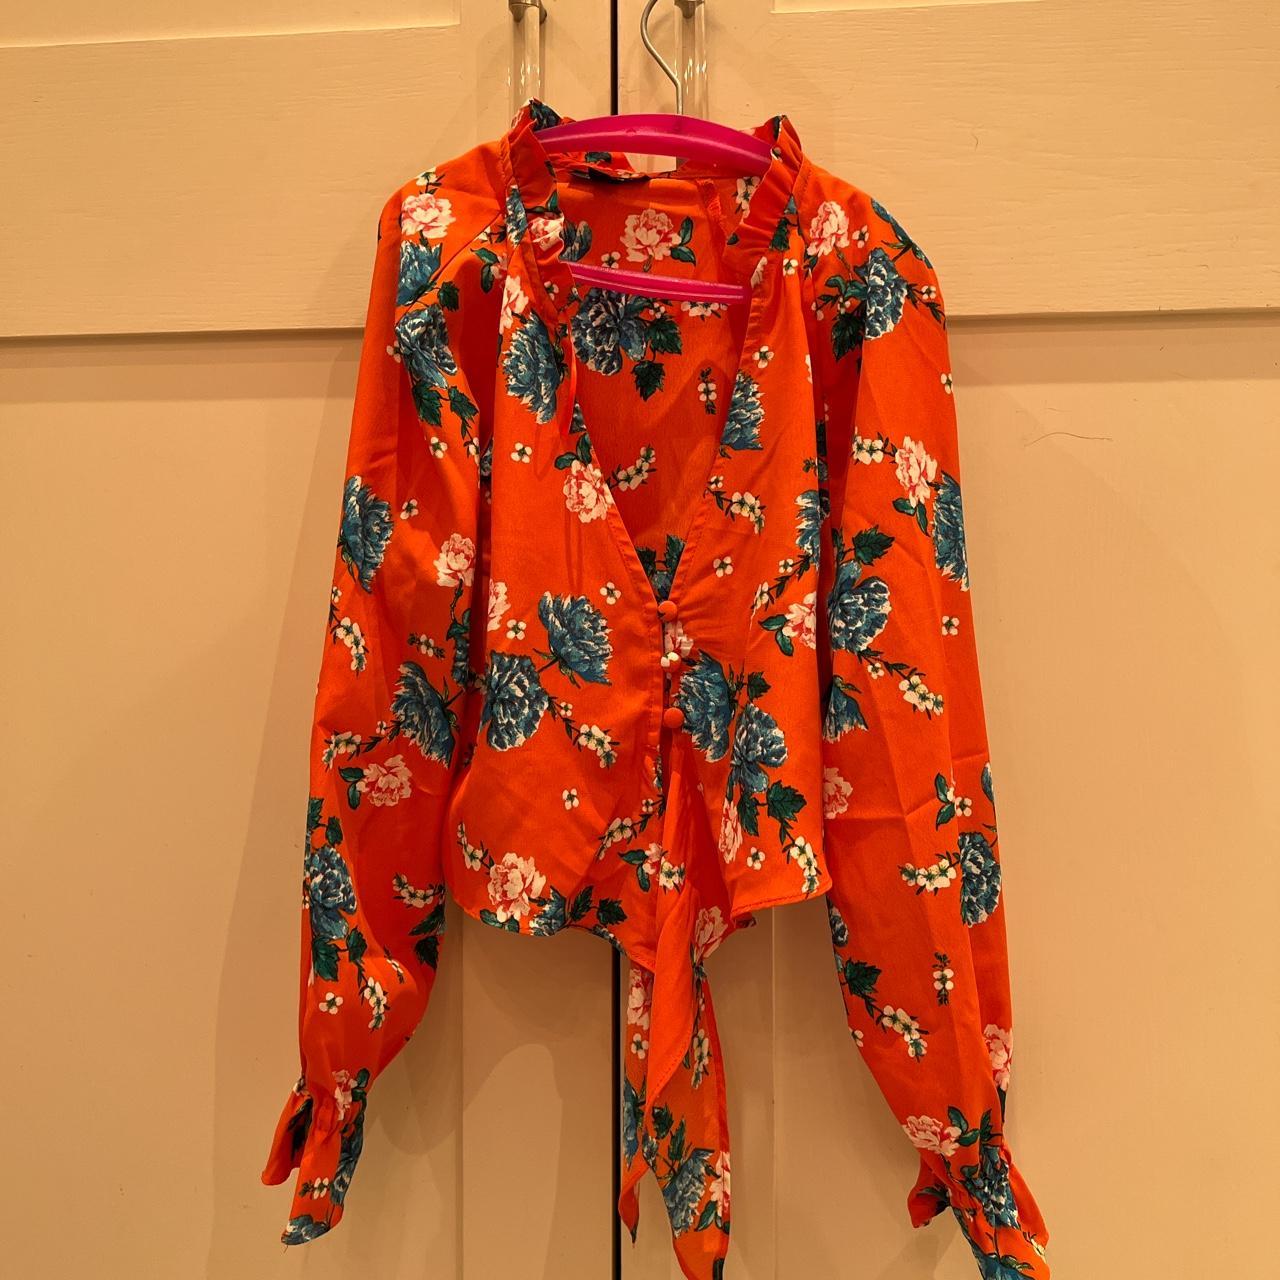 Depop orange floral cropped blouse with... - Depop